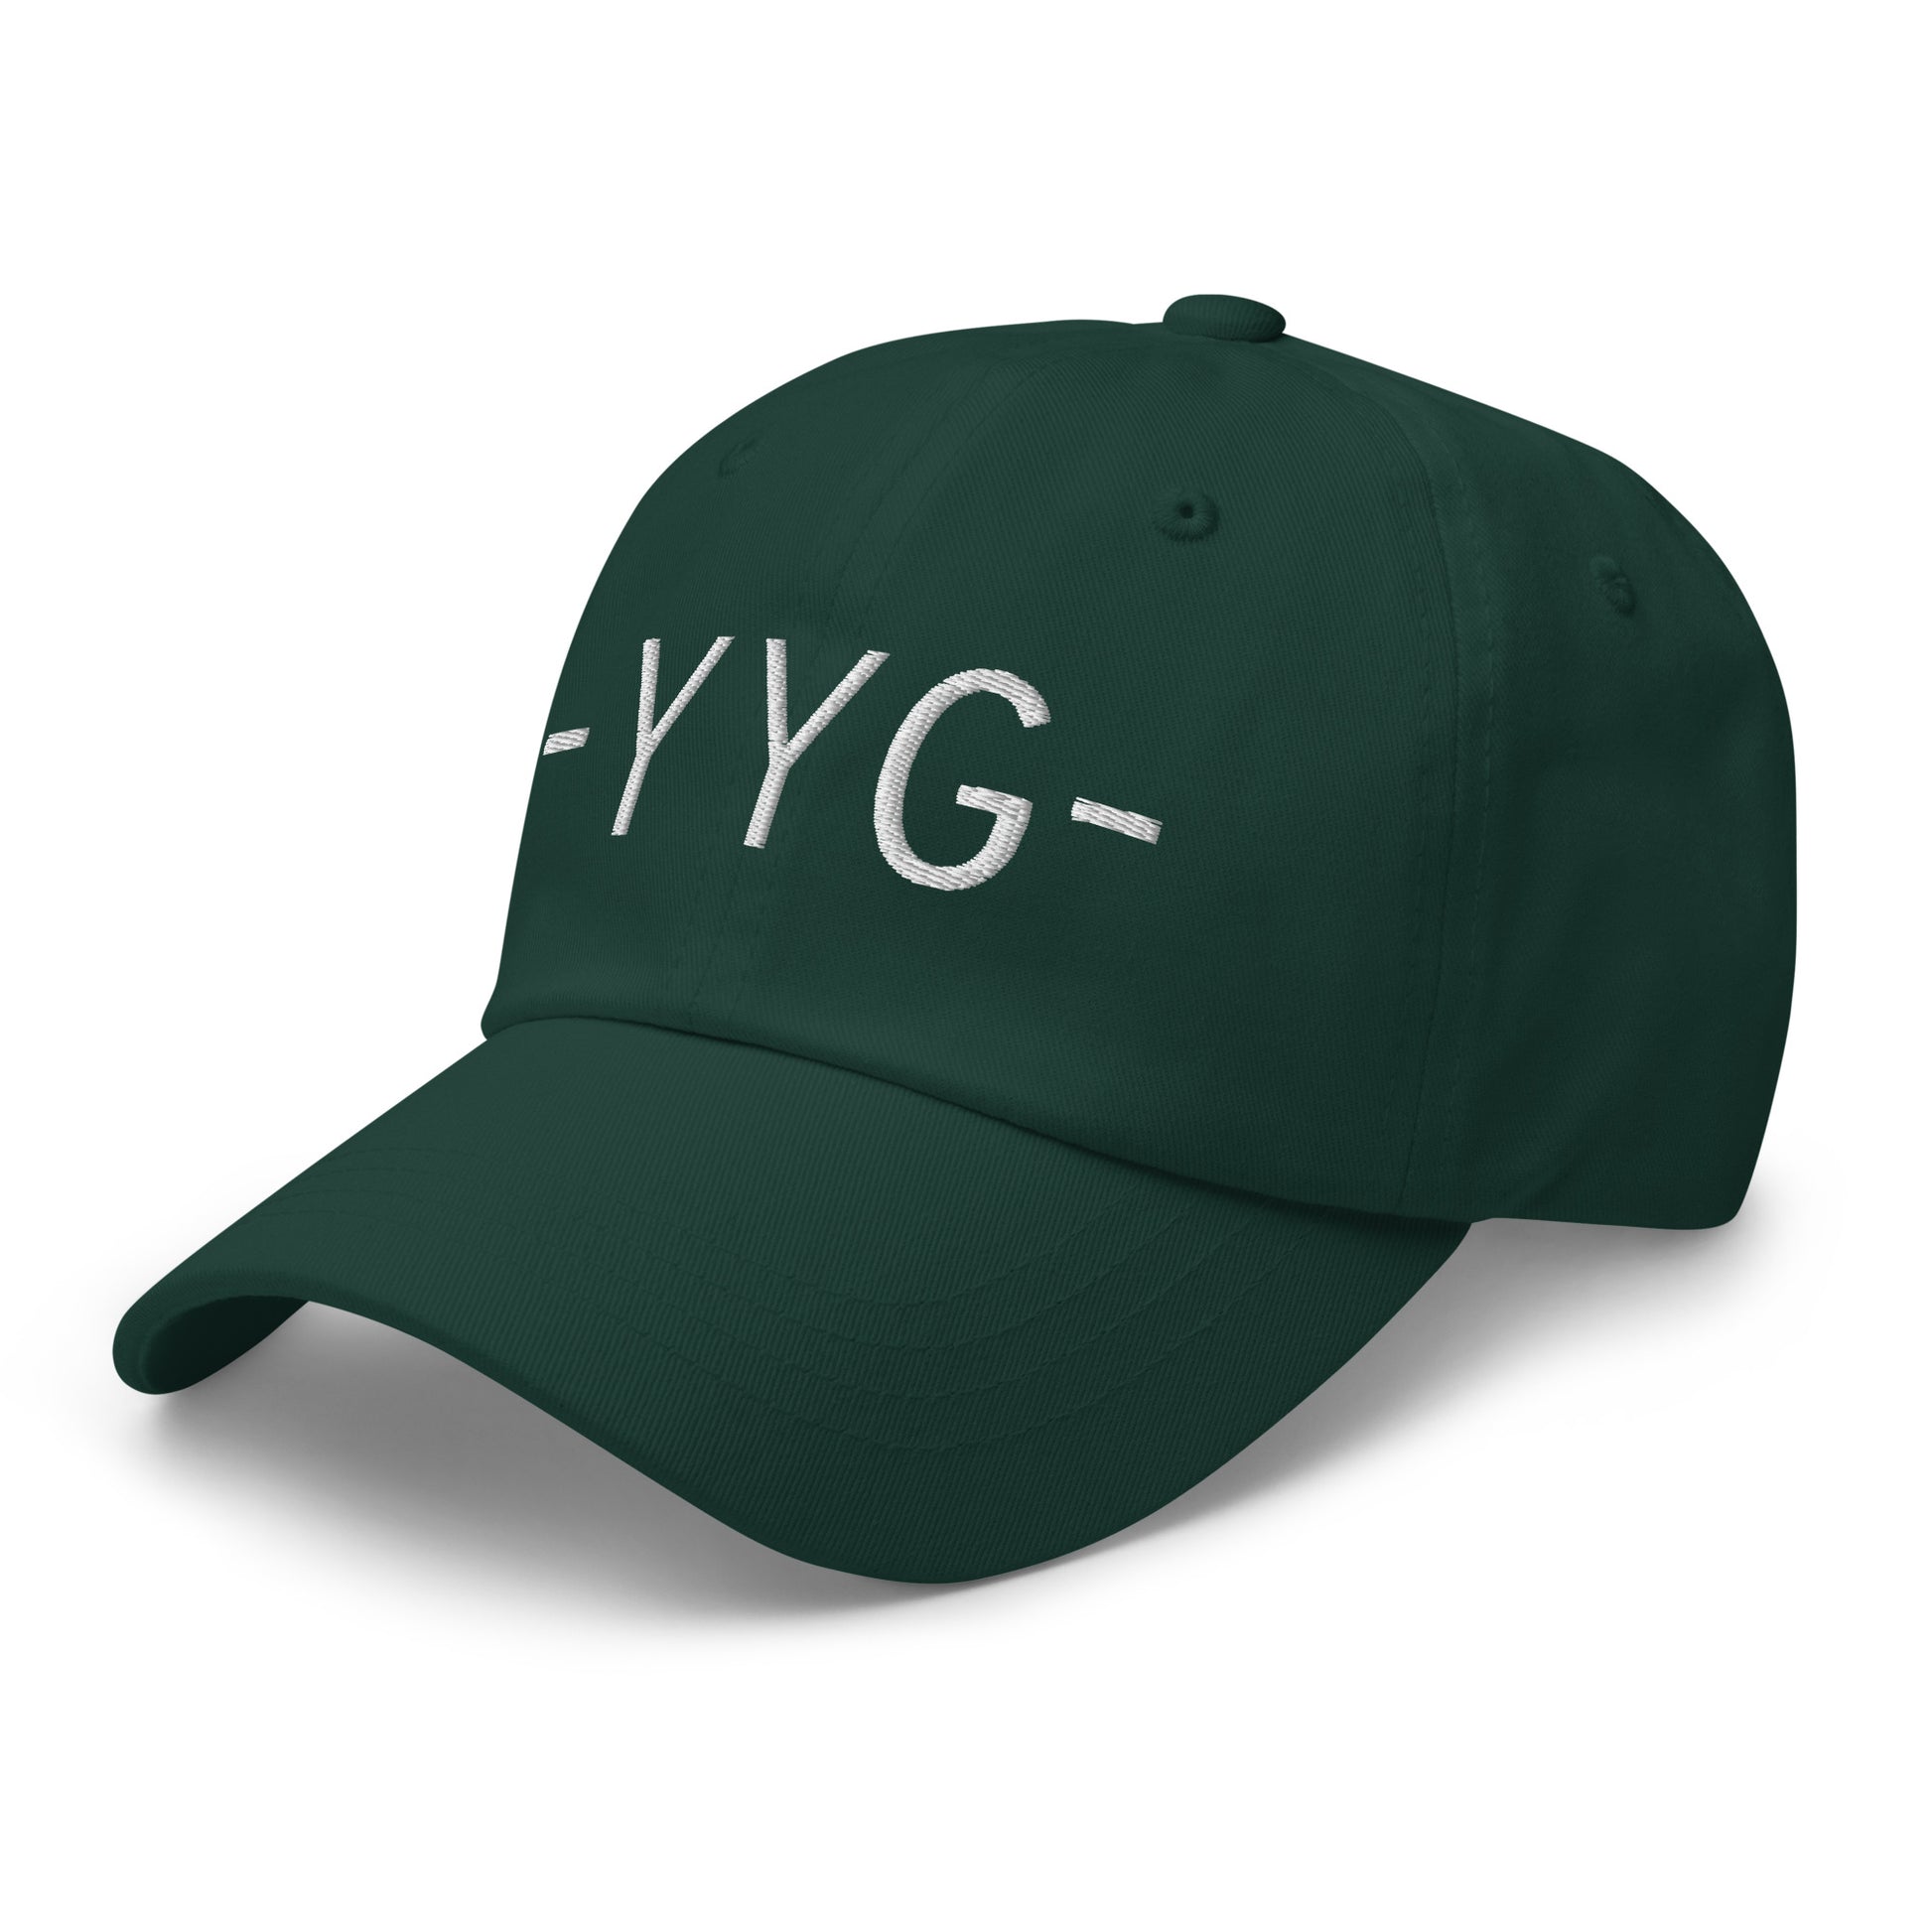 Souvenir Baseball Cap - White • YYG Charlottetown • YHM Designs - Image 18